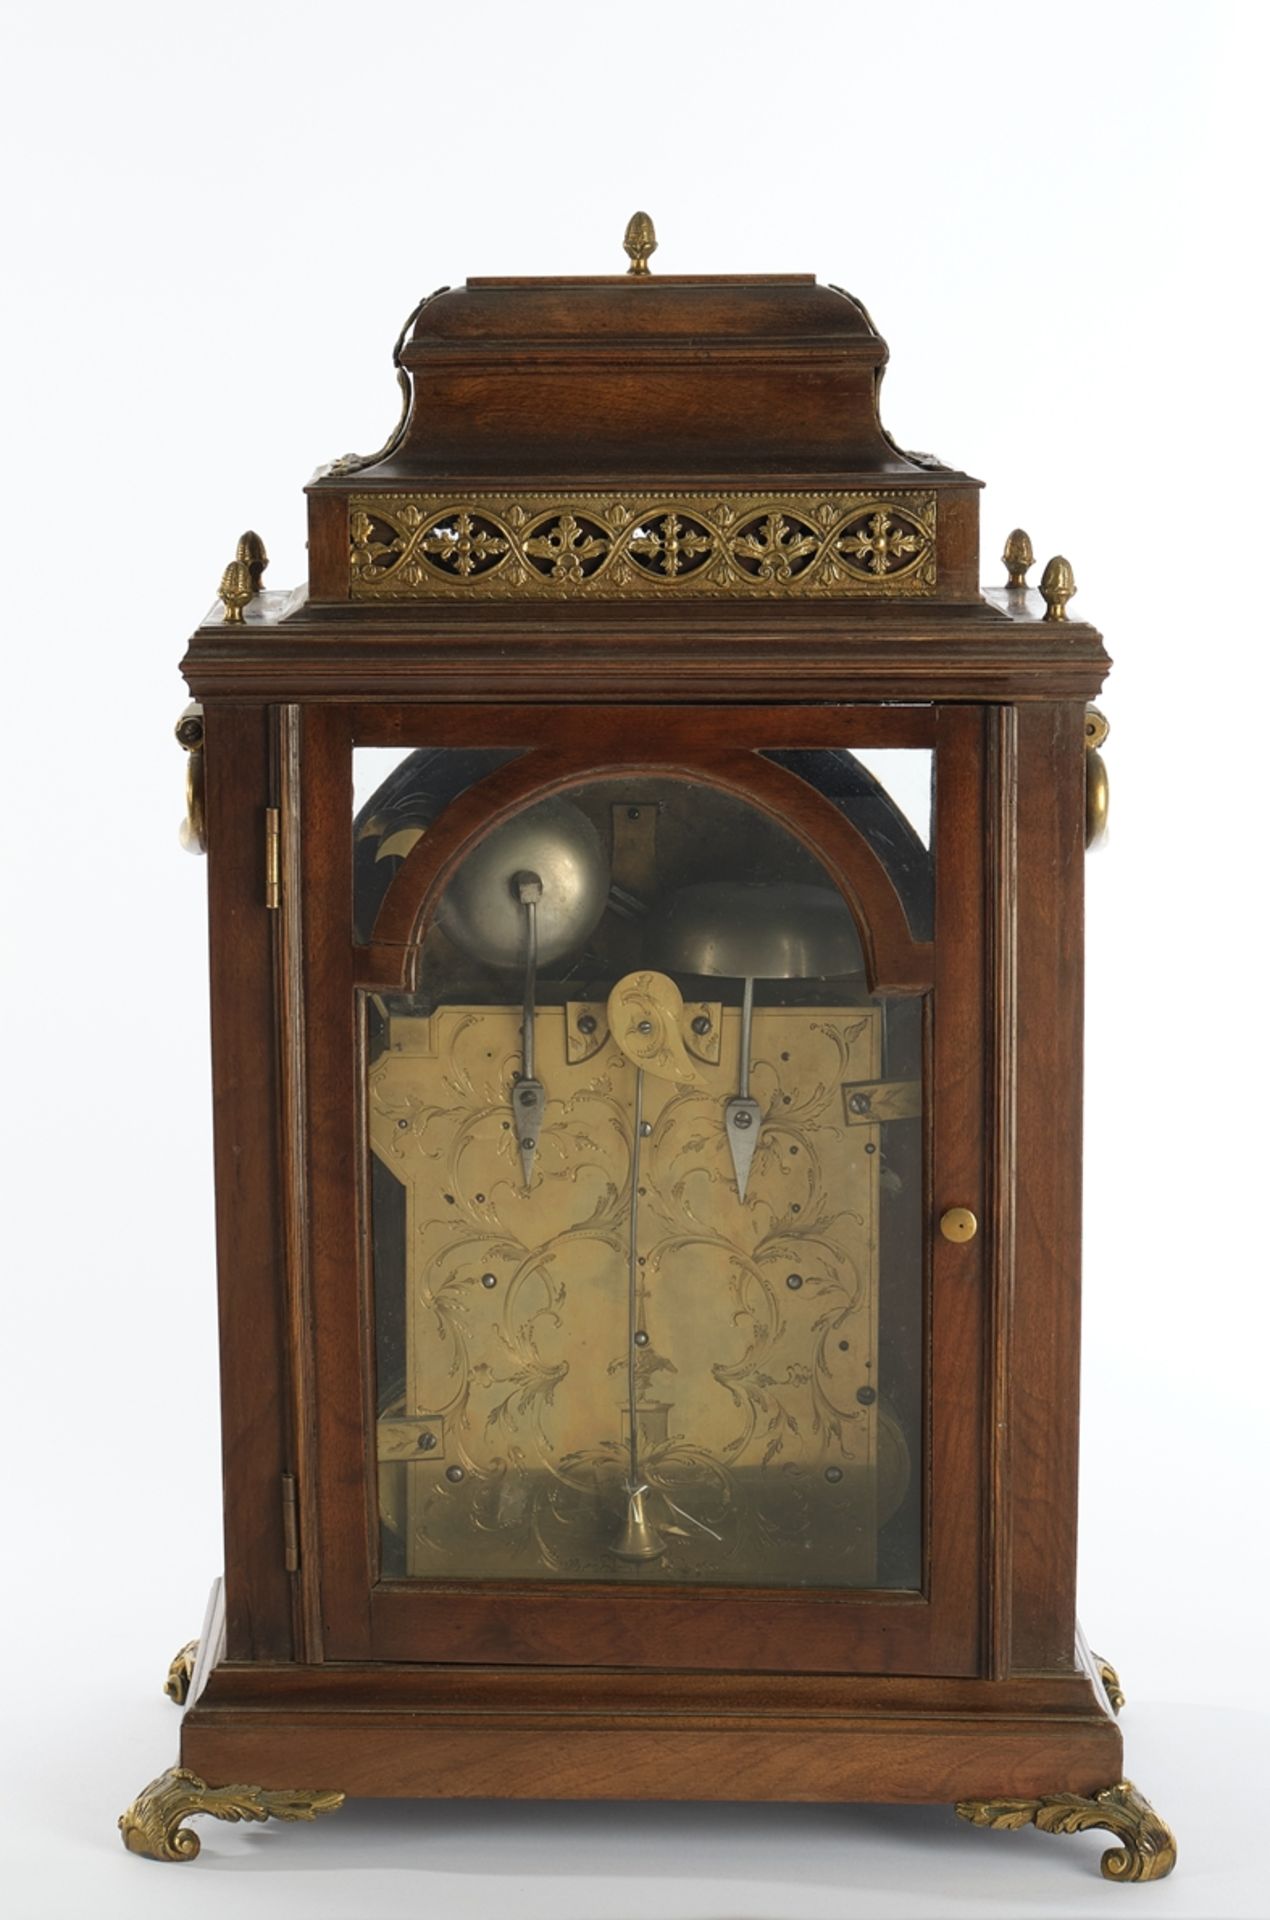 Bracket Clock, England, um 1830/40, hochrechteckiges Mahagoni-Gehäuse, Zifferblatt bezeichnet Ralph - Bild 4 aus 4